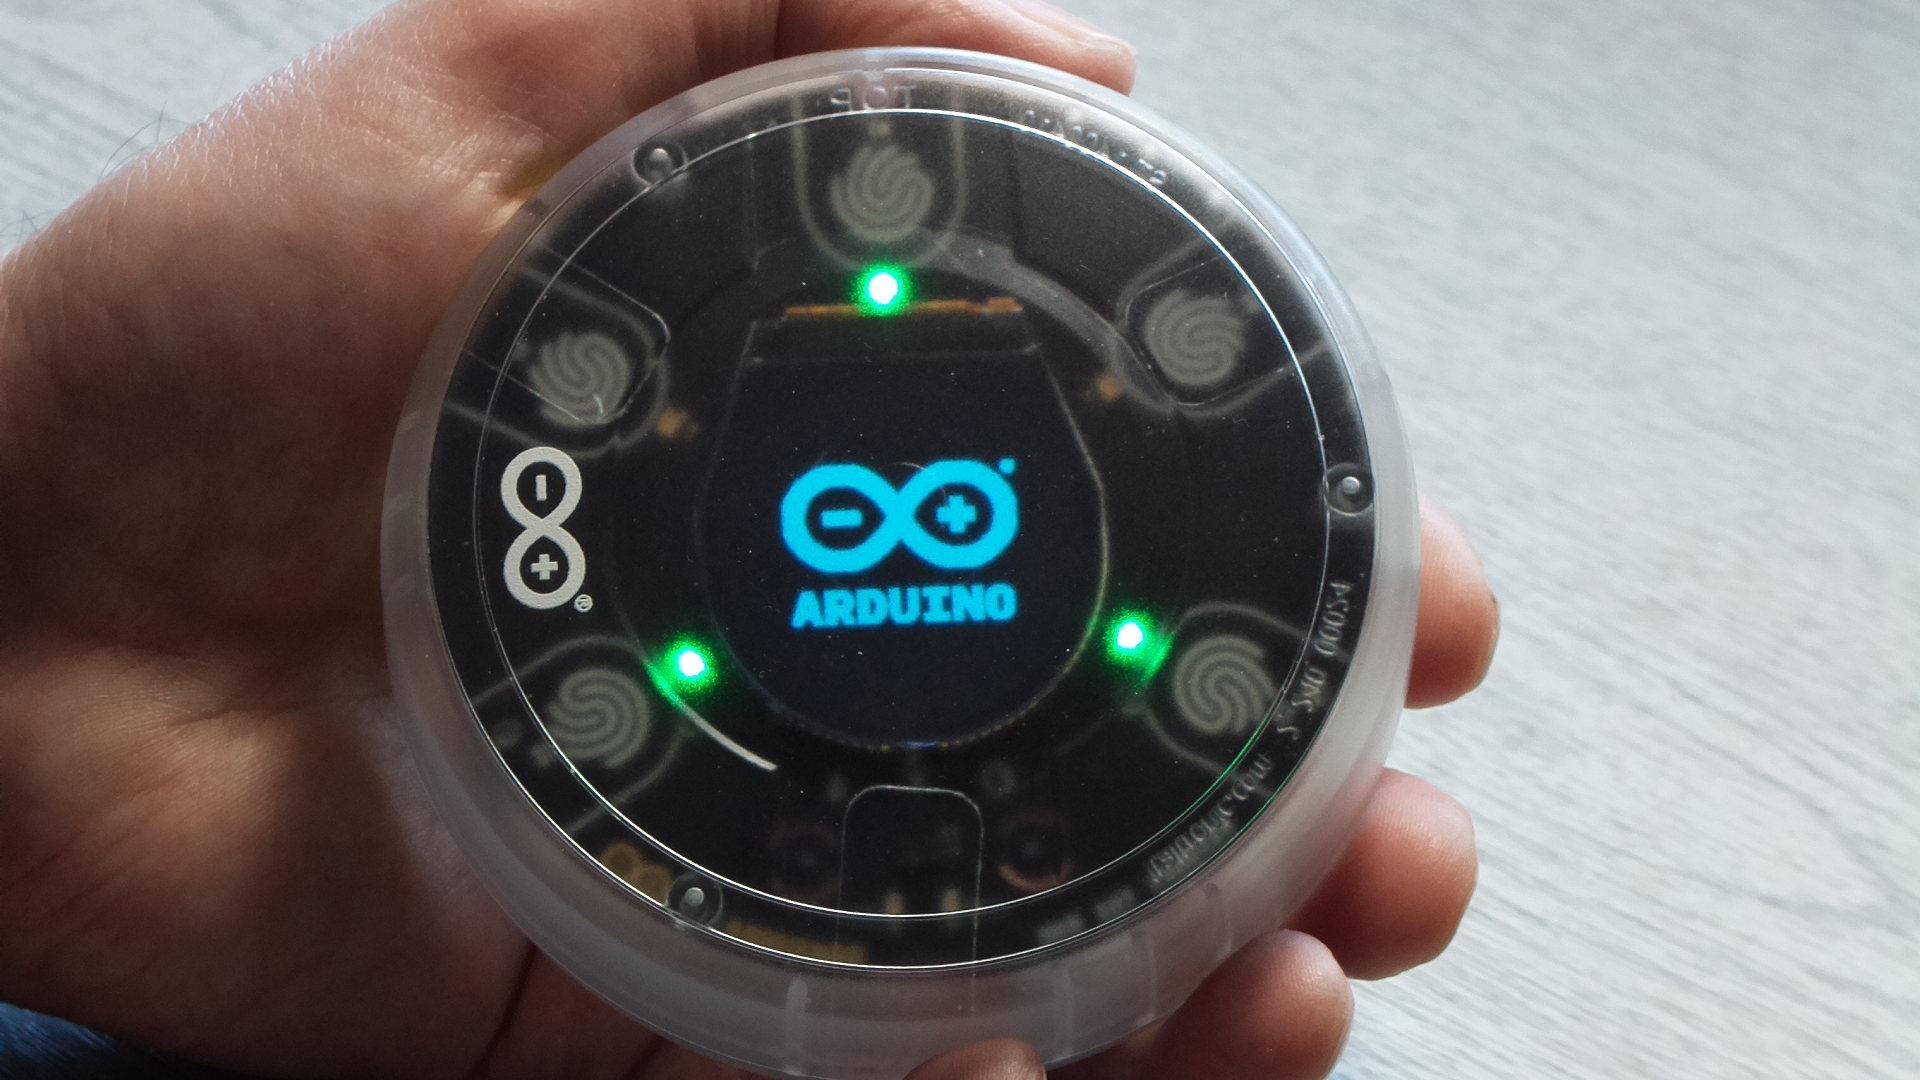 opla displaying arduino logo